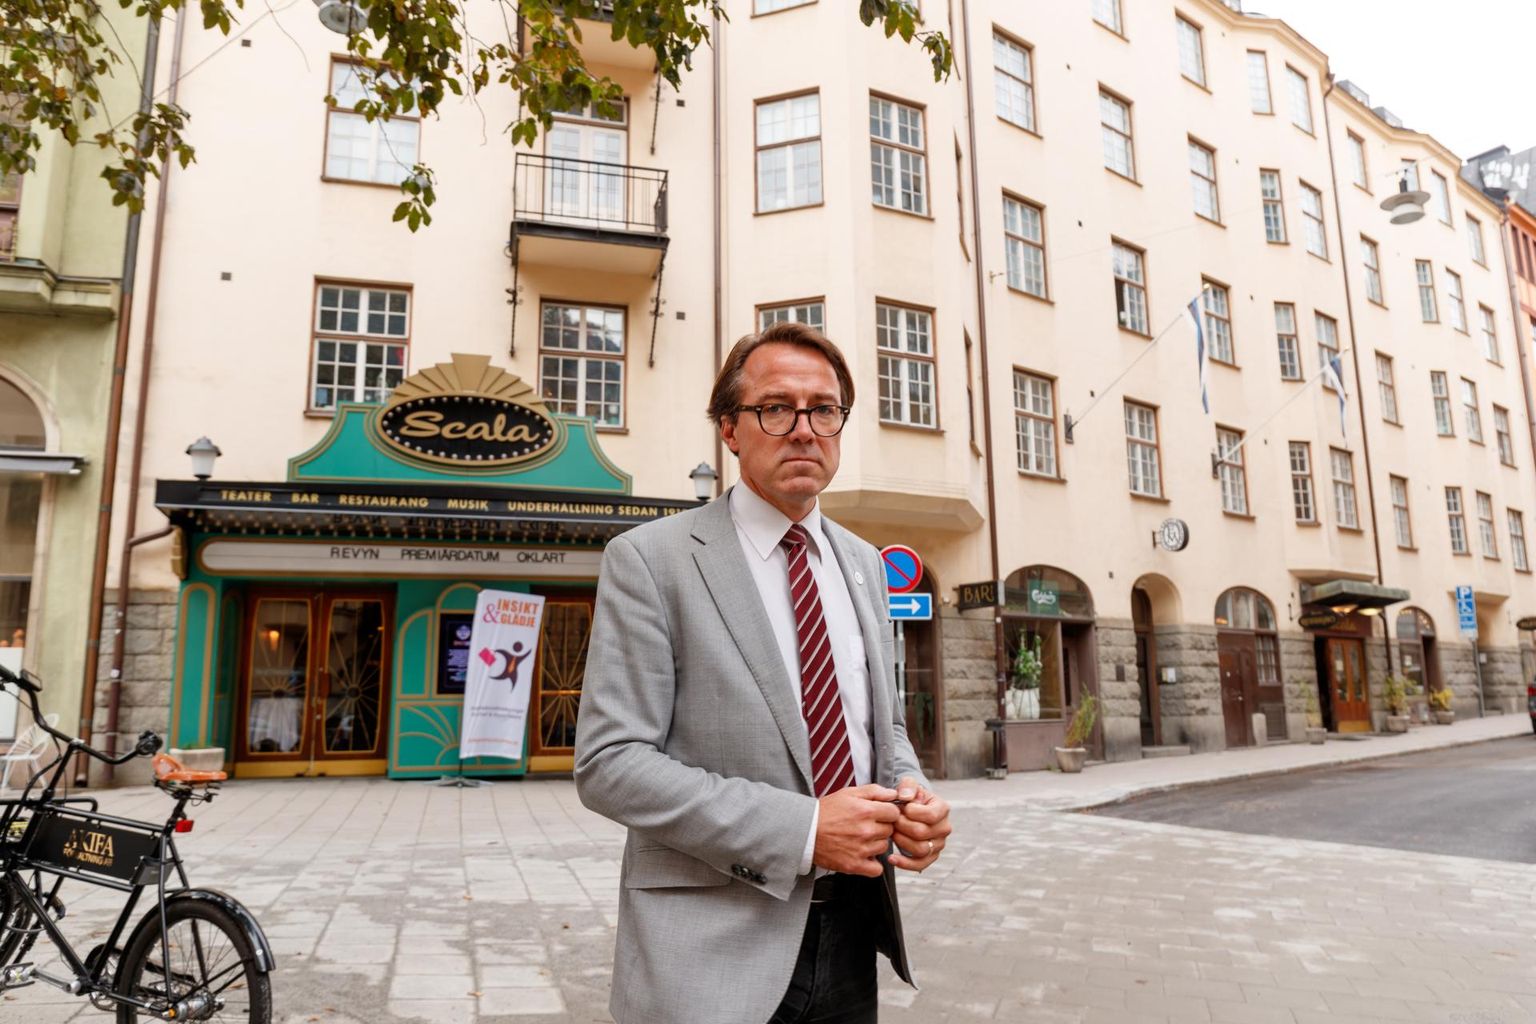 Taave Sööt Vahermägi on Eesti Maja tegevjuhtinud alates 2017. aastast. 